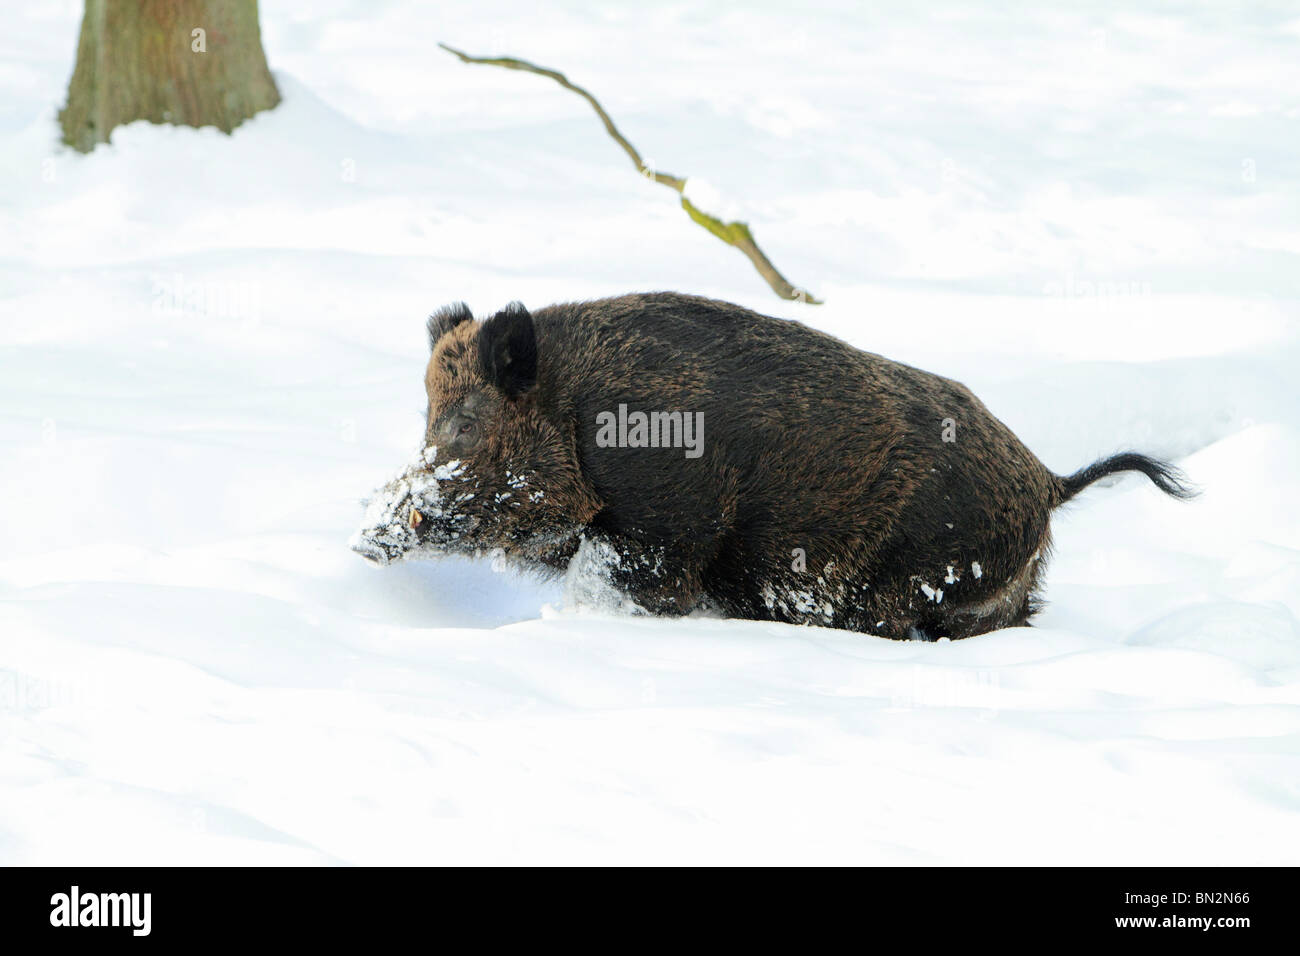 Cochon sauvage européenne, (Sus scrofa) mâle d'un animal ou d'un sanglier, courant à travers la neige profonde en forêt, Allemagne Banque D'Images